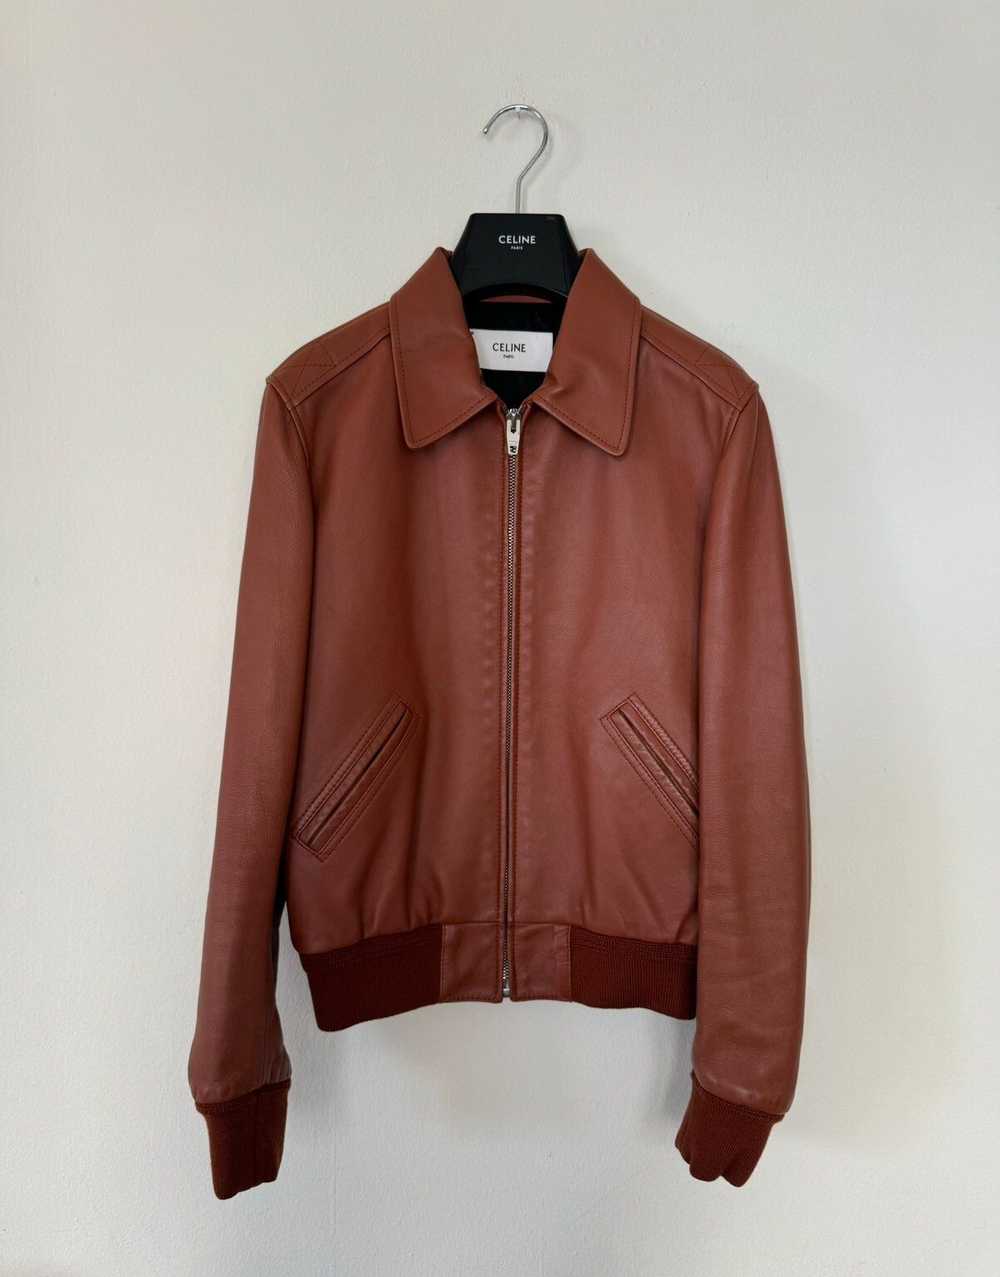 Celine × Hedi Slimane Celine Leather Jacket Aviat… - image 1